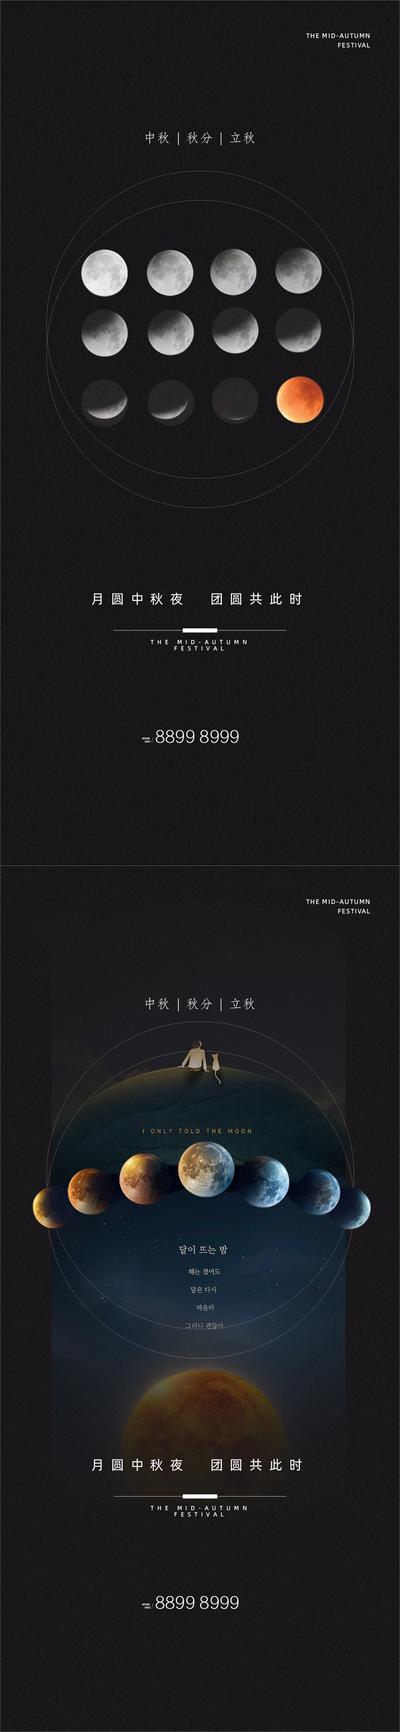 南门网 海报 中国传统景观 二十四节气 中秋 立秋 秋分 月亮 系列